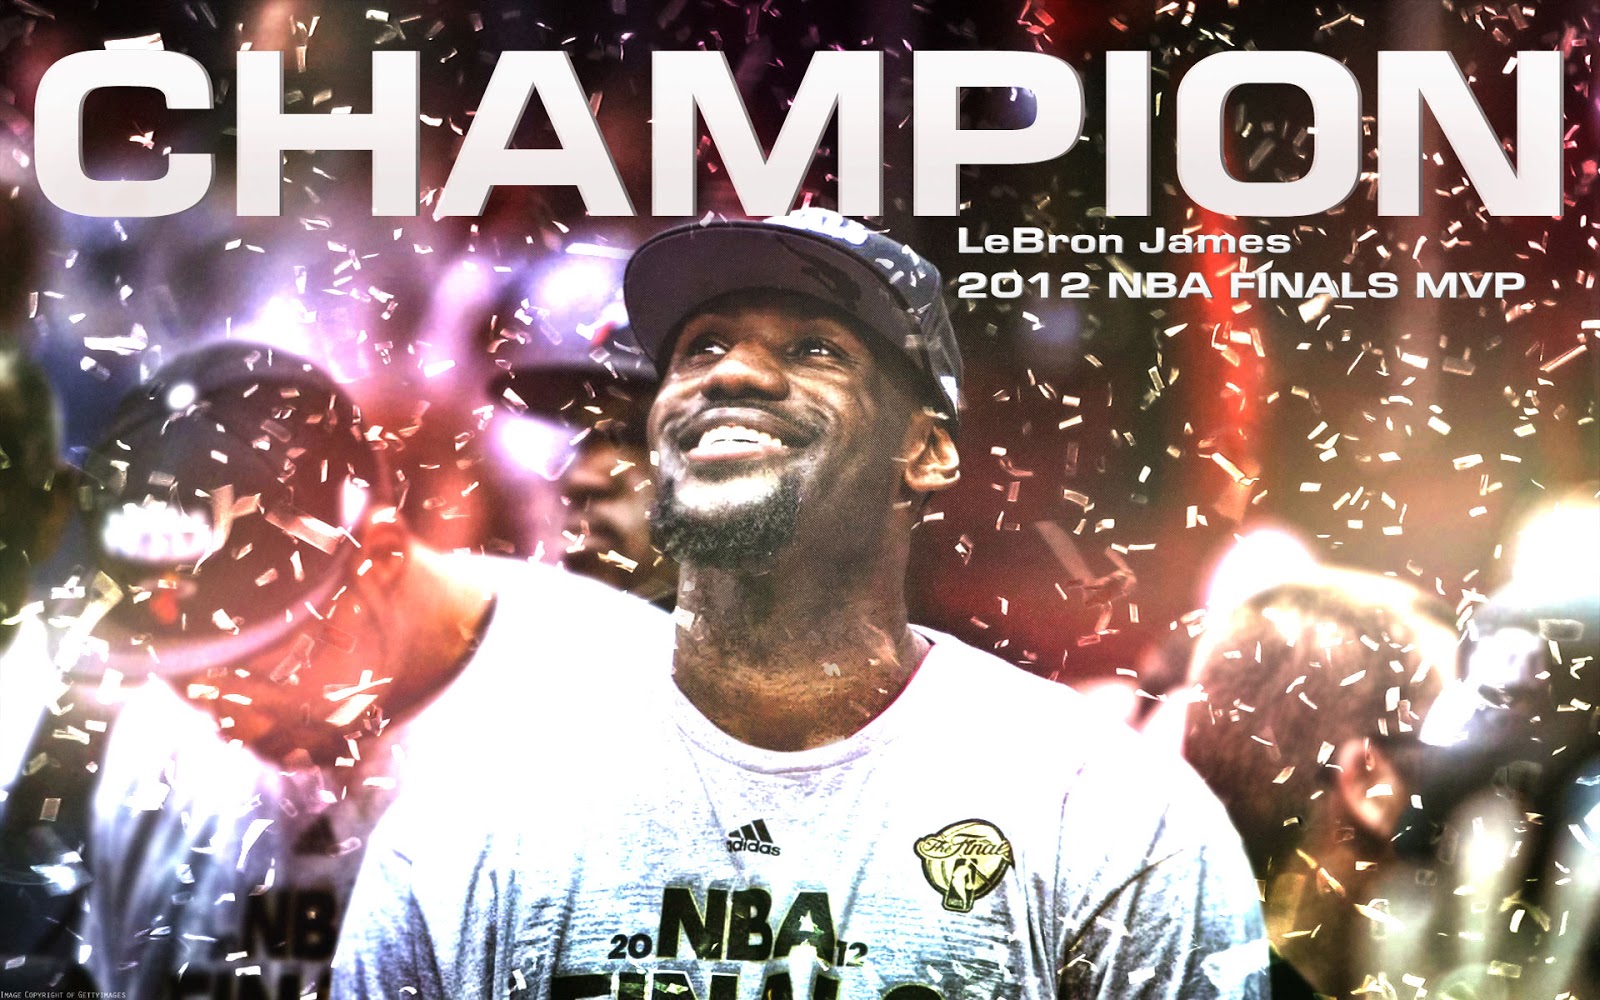 http://1.bp.blogspot.com/--o9SctzNBXs/UP_elD54EMI/AAAAAAAAE9c/iU1Y75CdHP0/s1600/LeBron-James-2012-NBA-Finals-MVP-1920x1200-Wallpaper.jpg